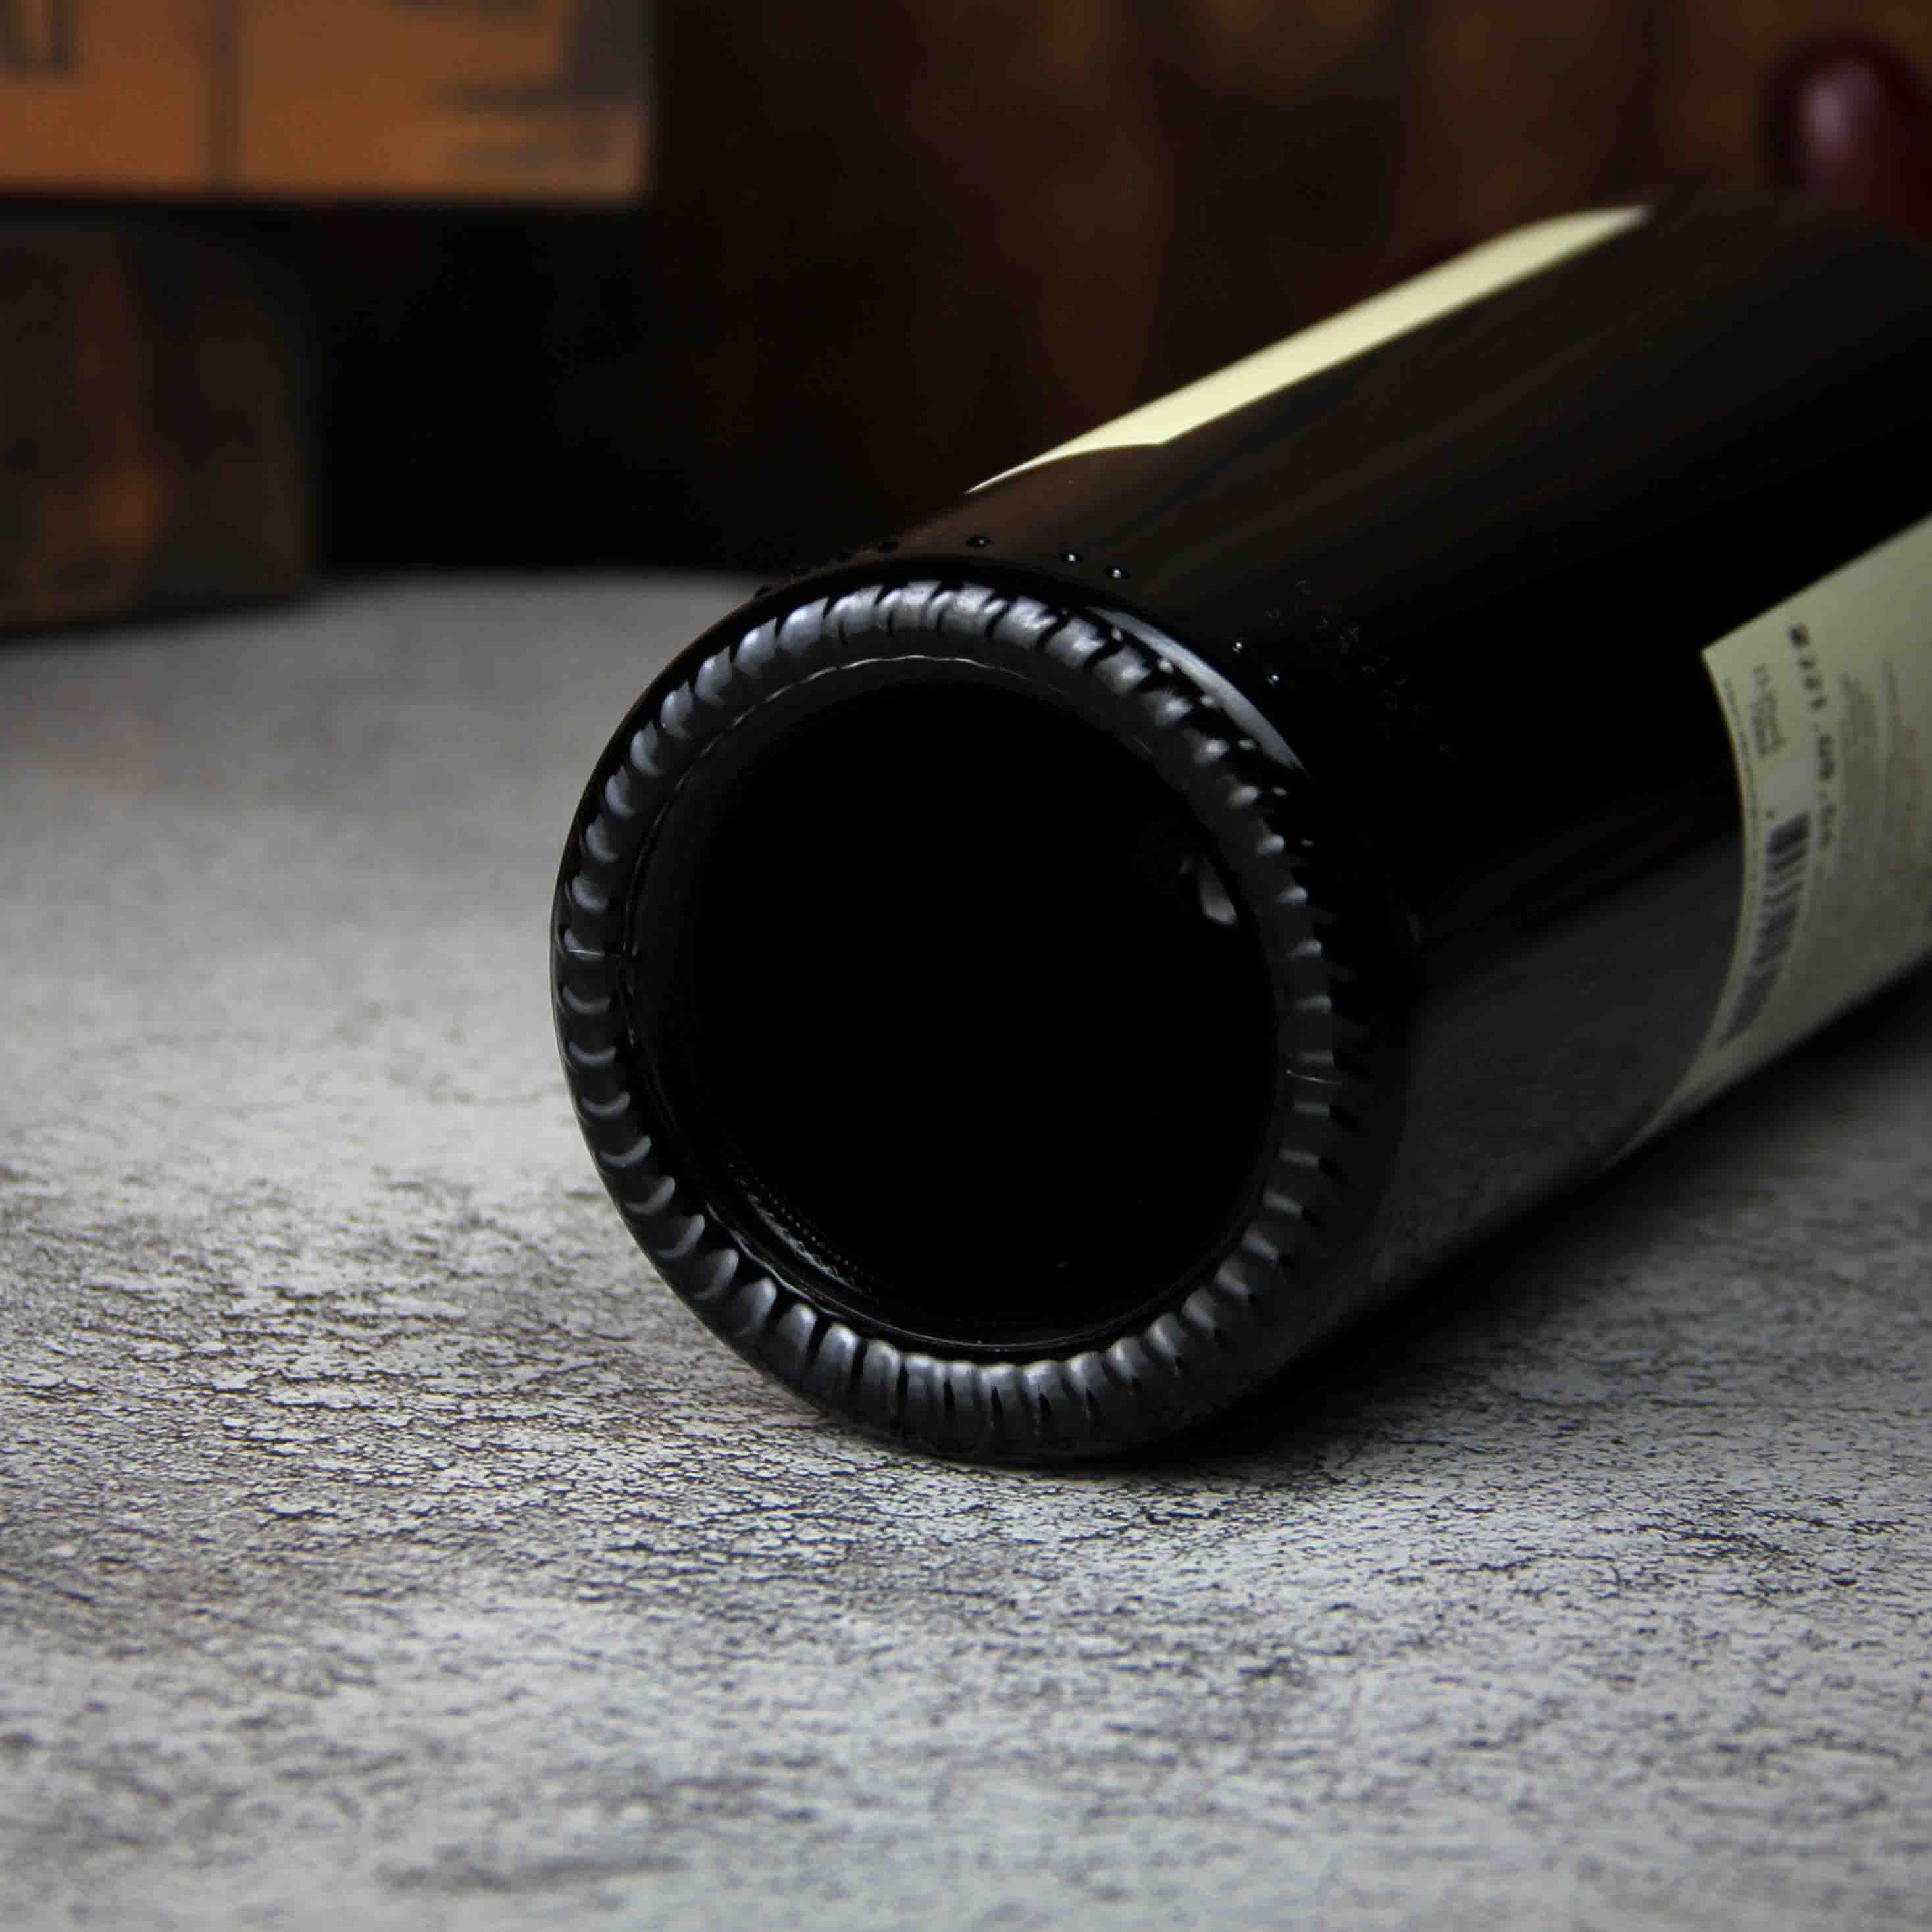 智利莫莱谷木翁精选赤霞珠红葡萄酒红酒